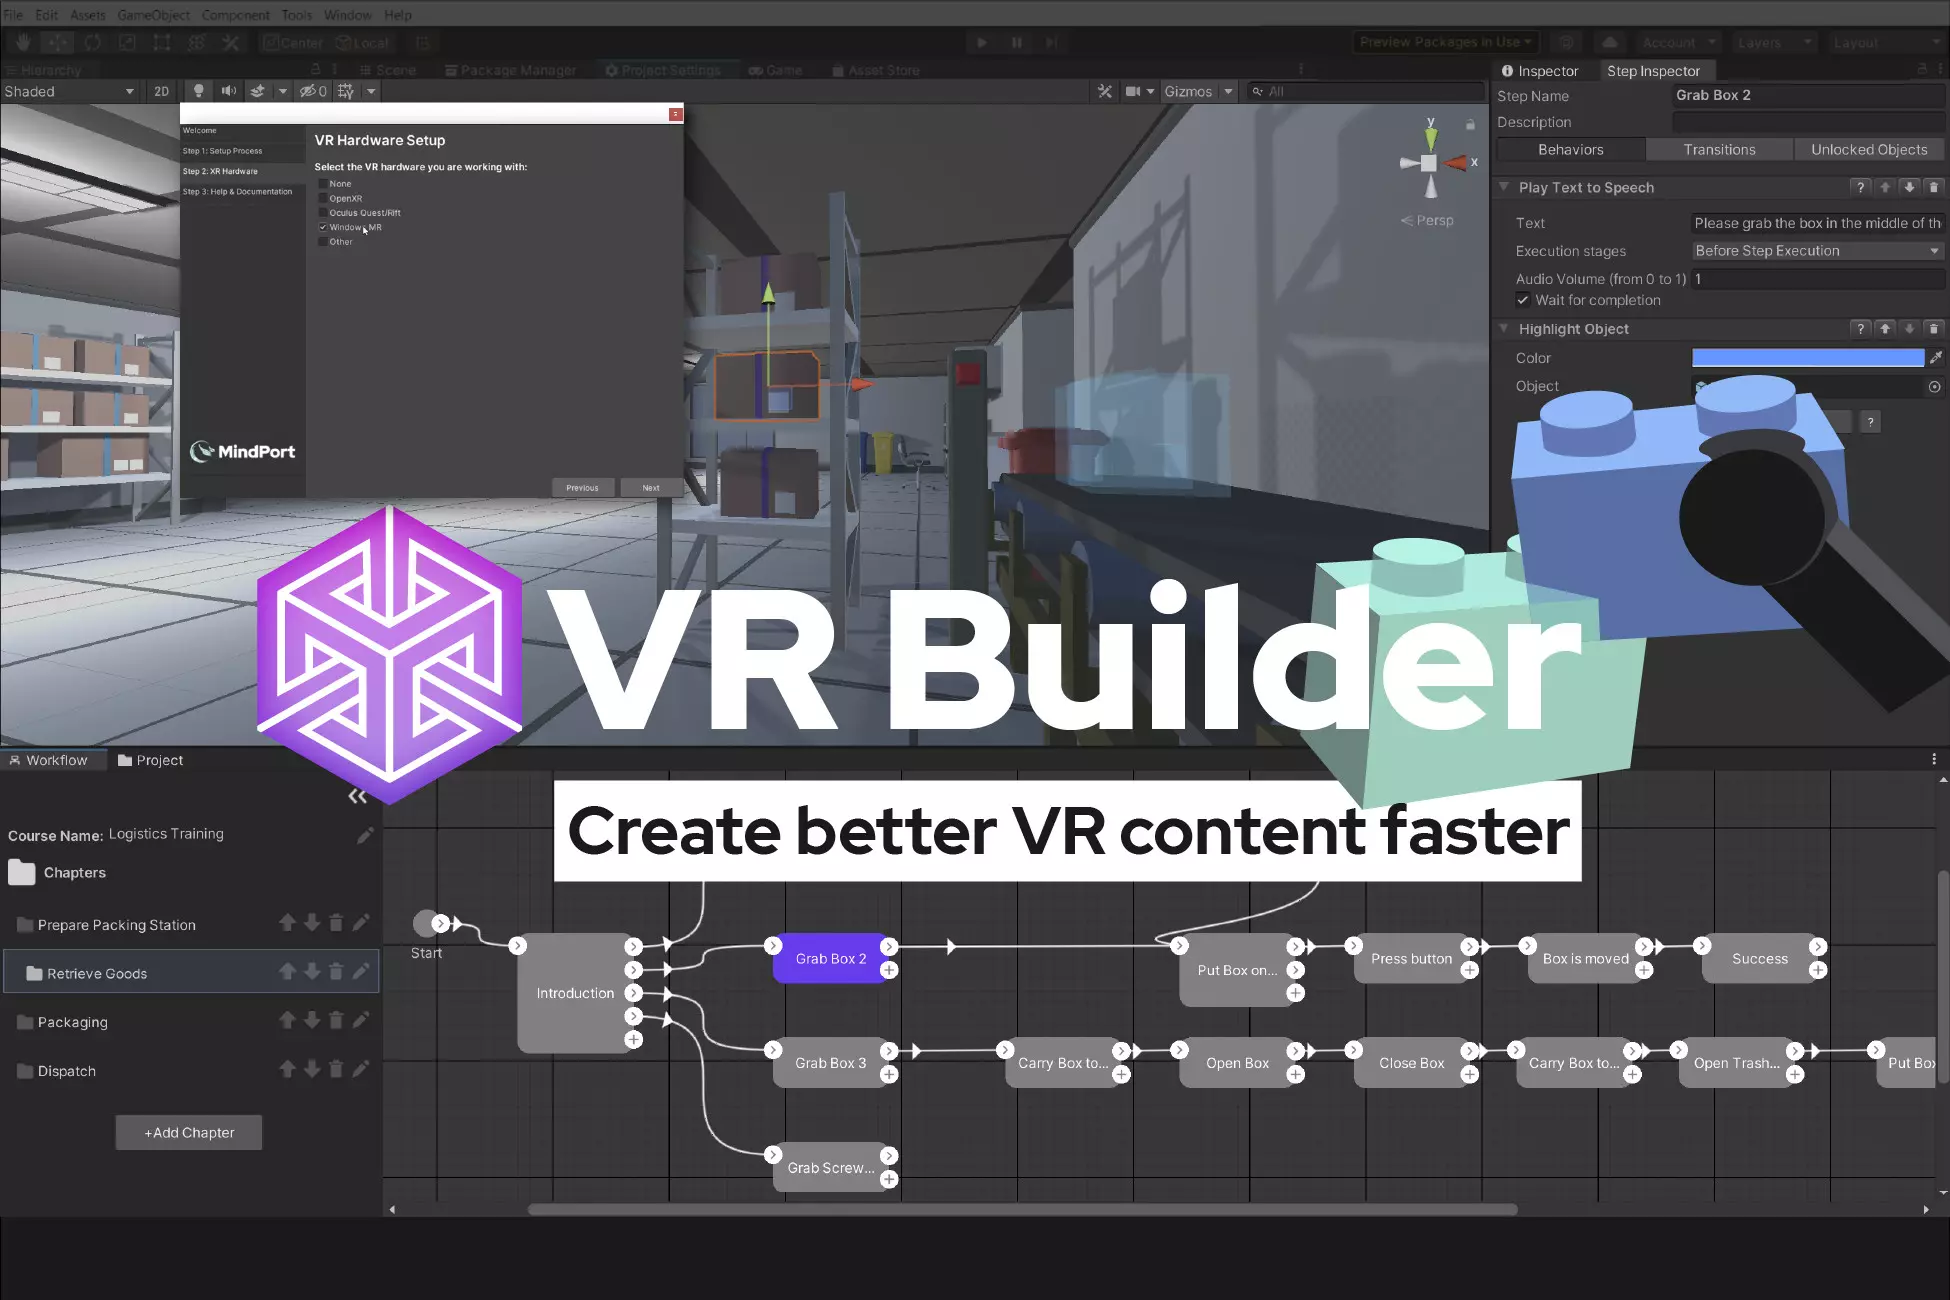 VR Builder workflow editor